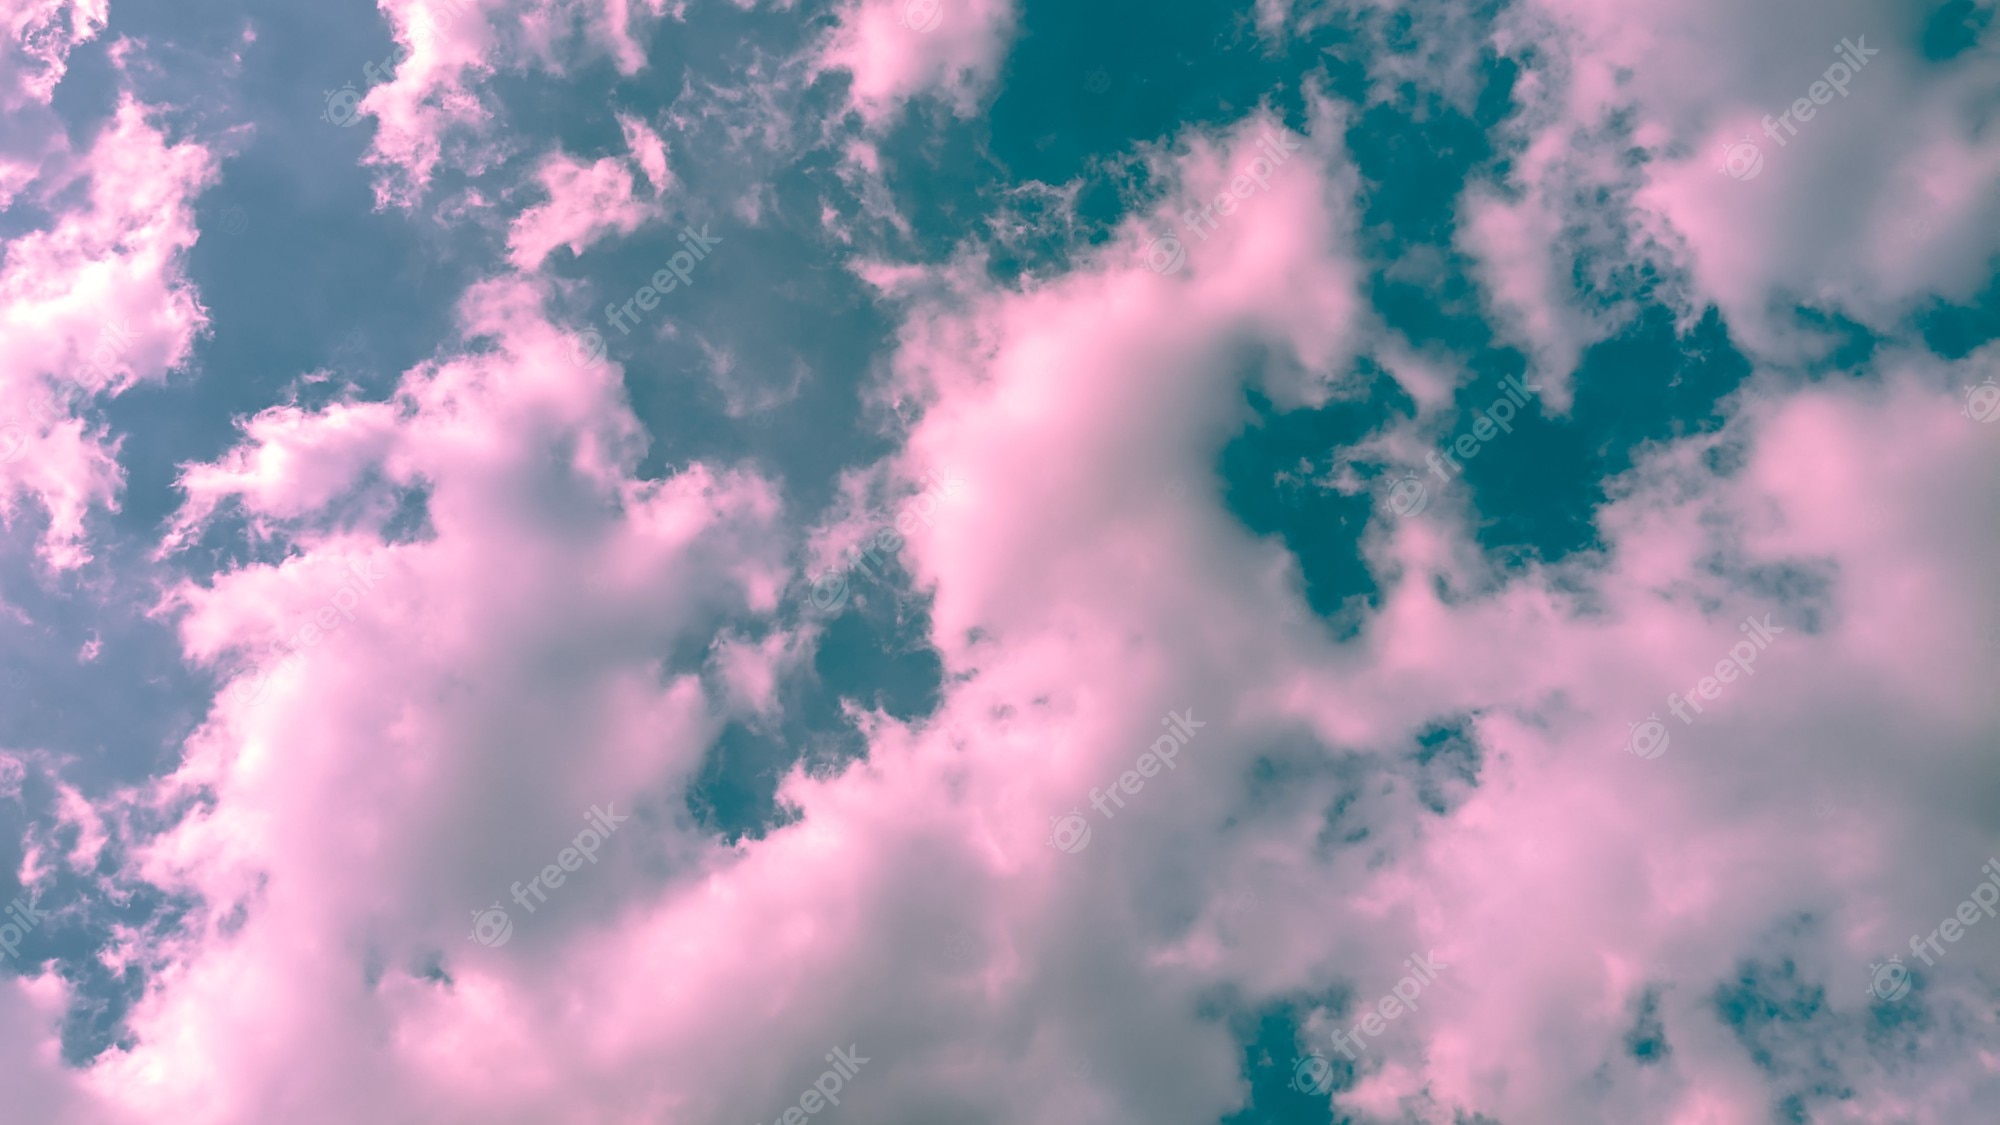 Aesthetic Cloud Wallpaper Image